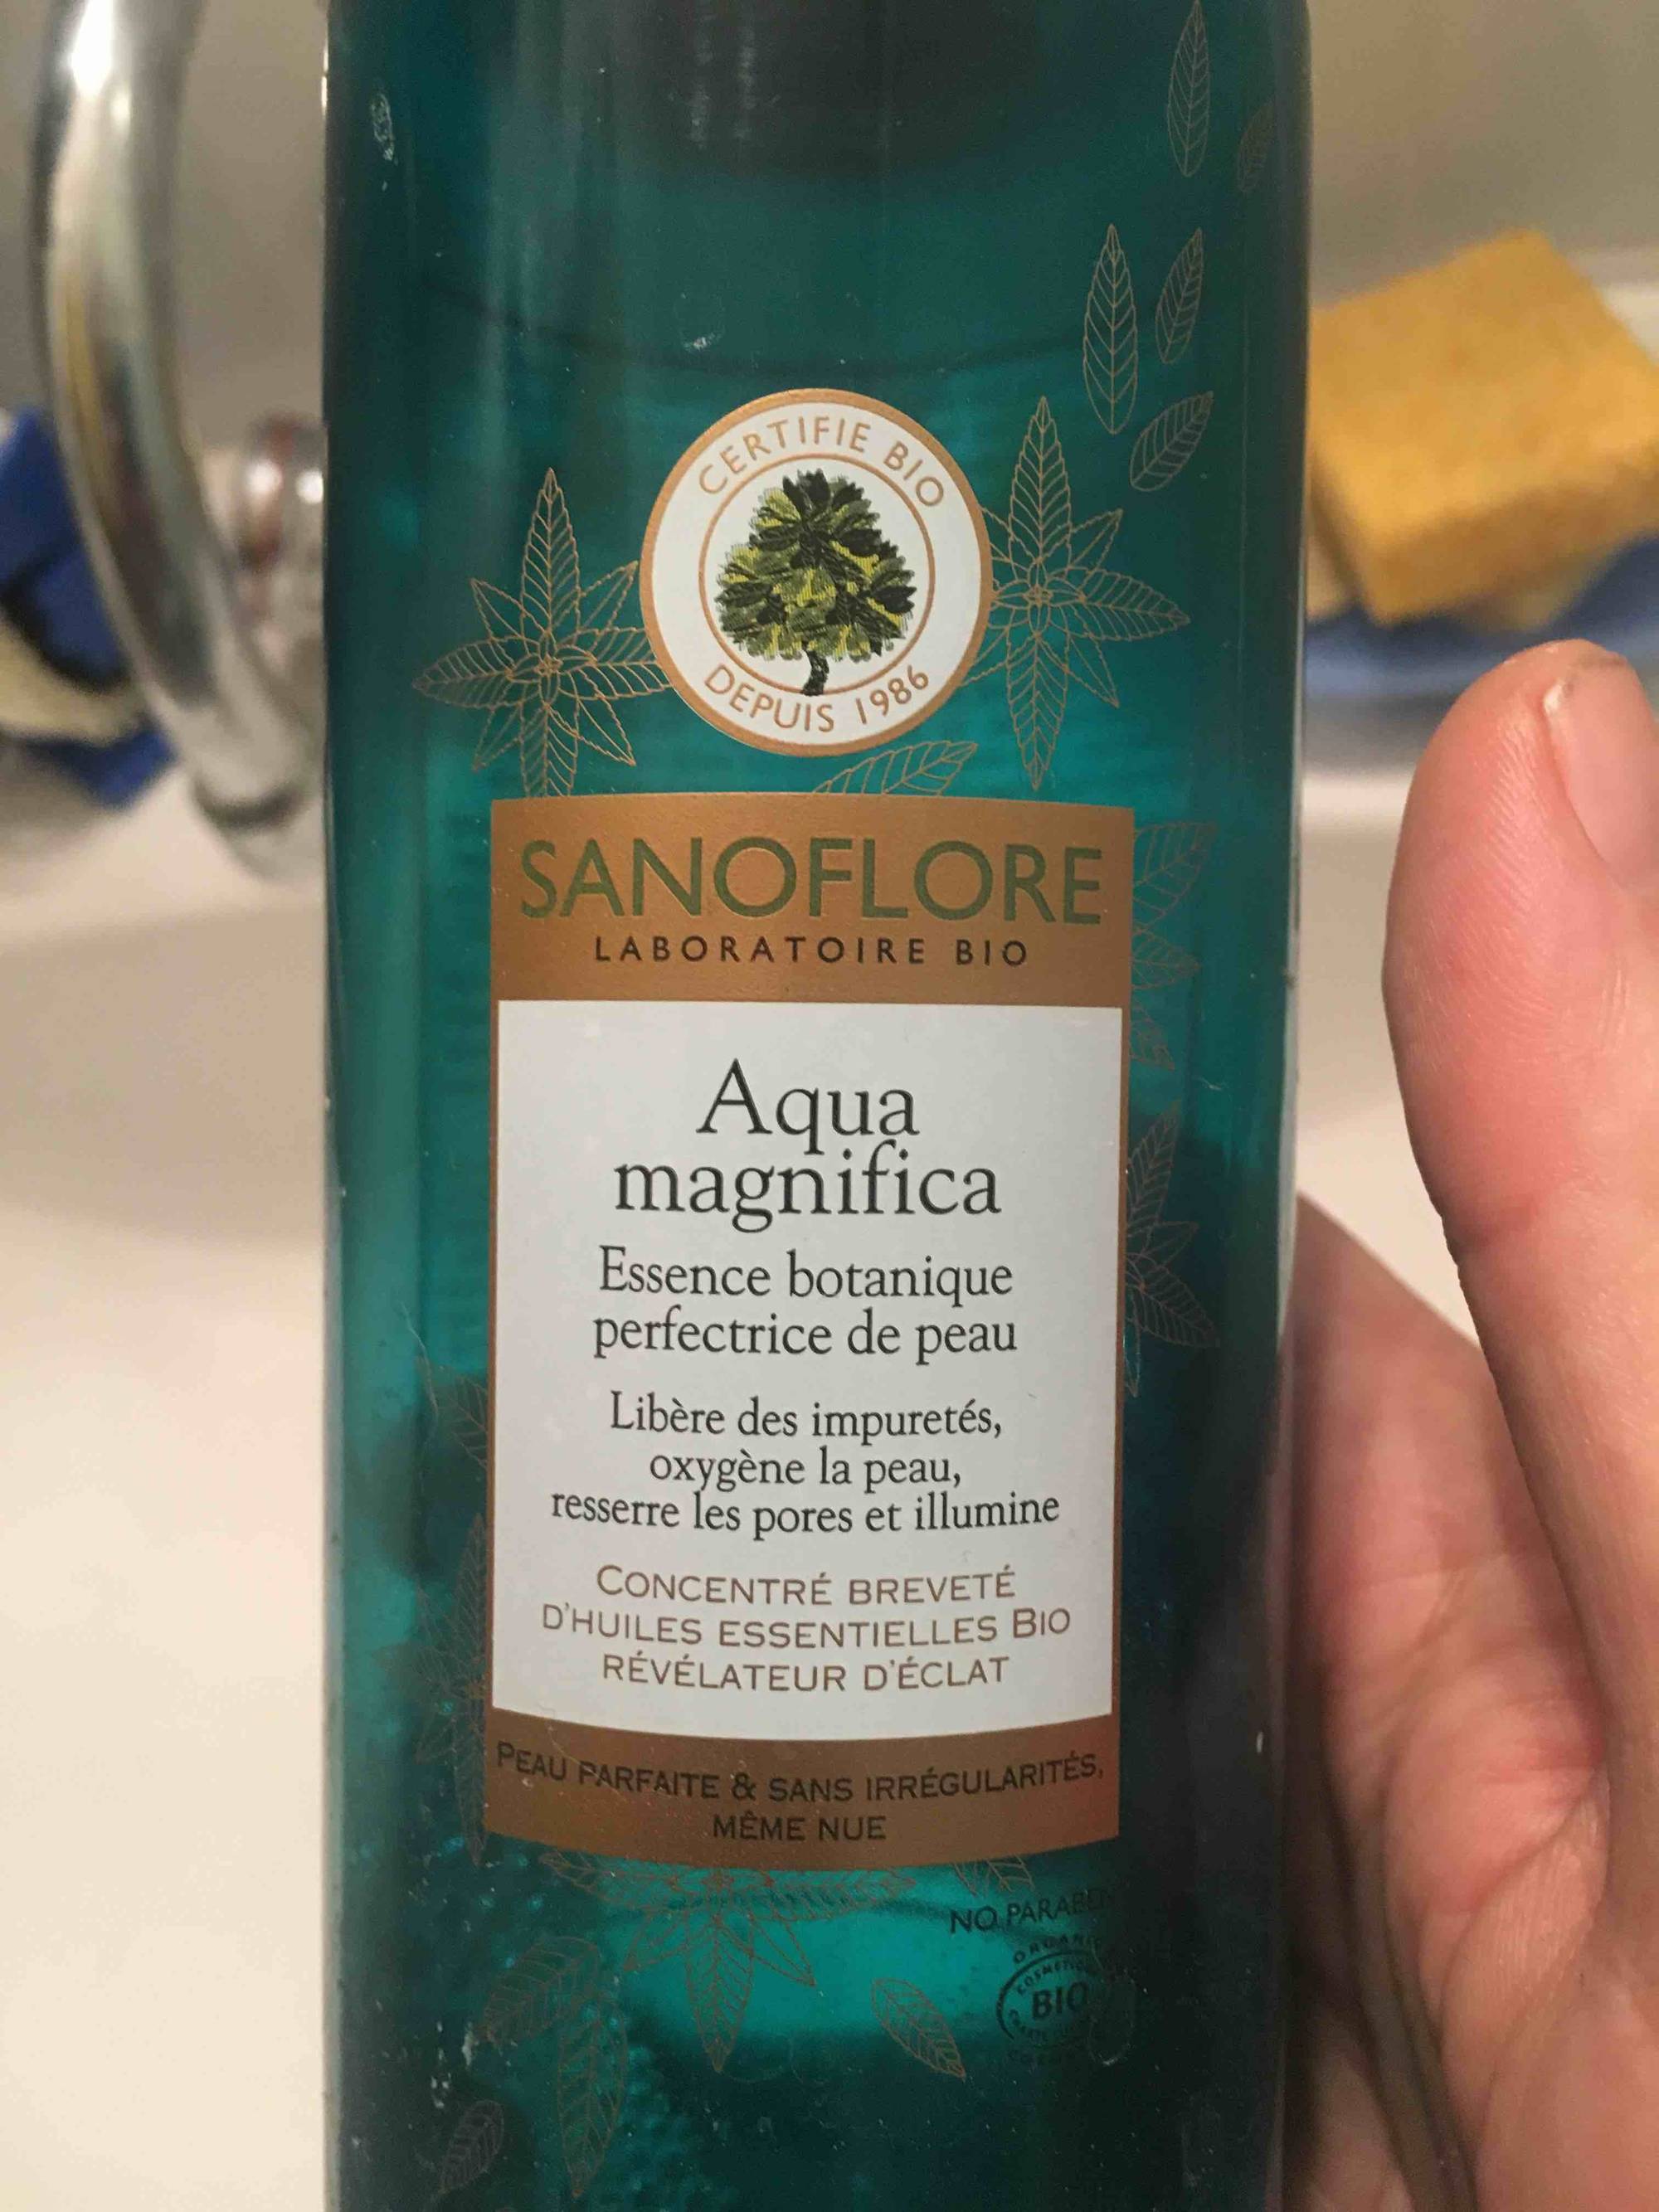 SANOFLORE - Aqua magnifica - Essence botanique perfectrice de peau - Bio